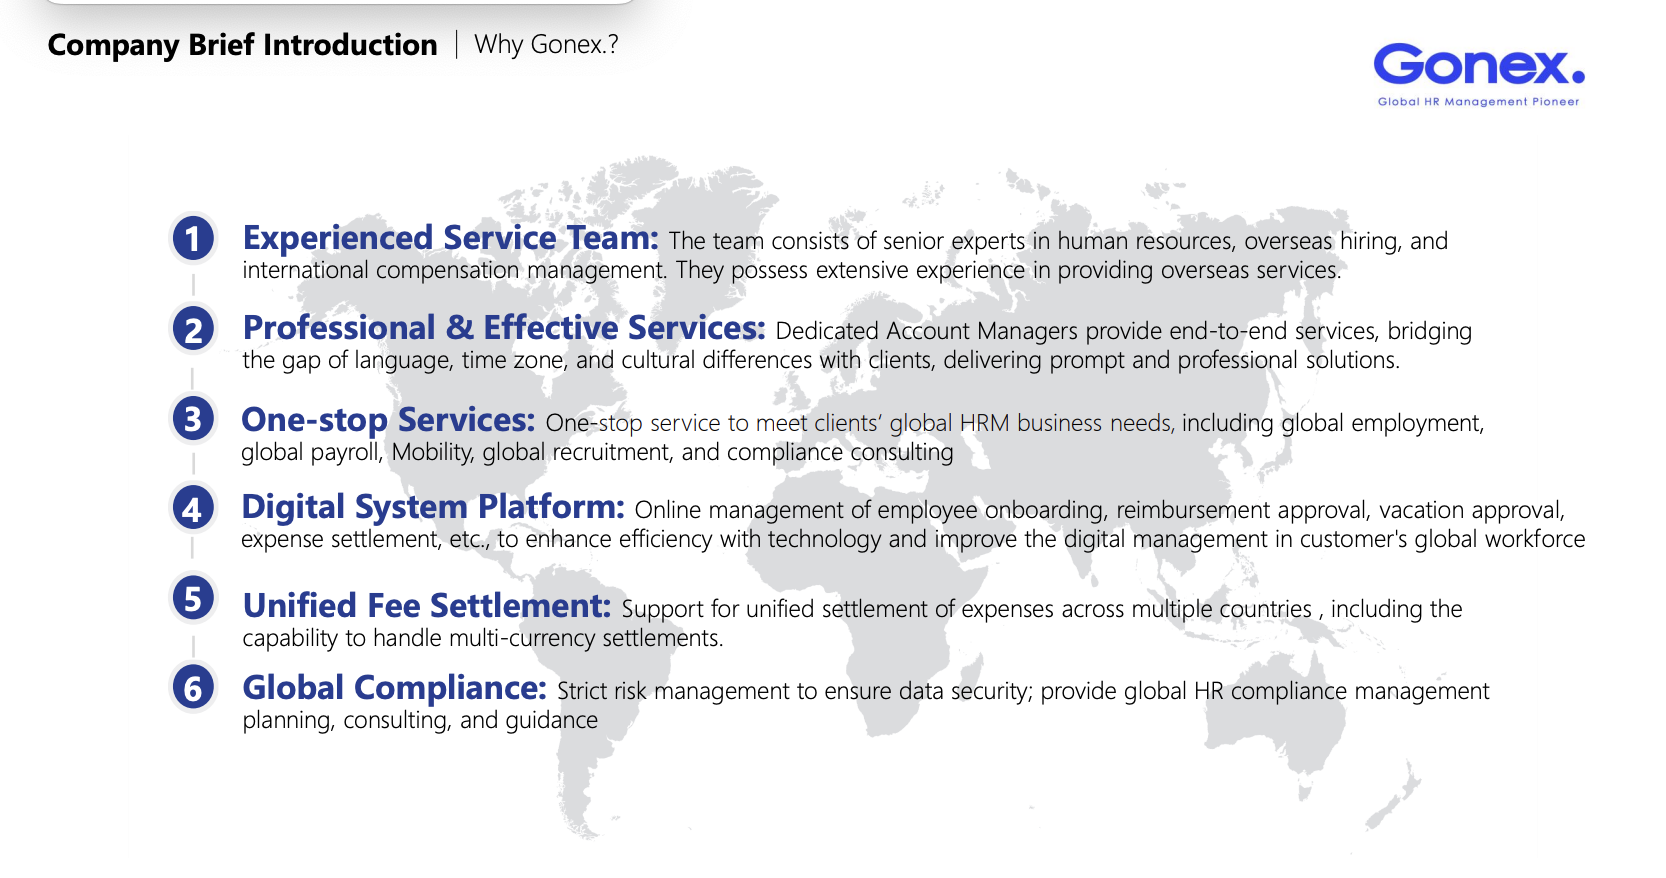 Why Gonex？- The advantages of Gonex’s services.